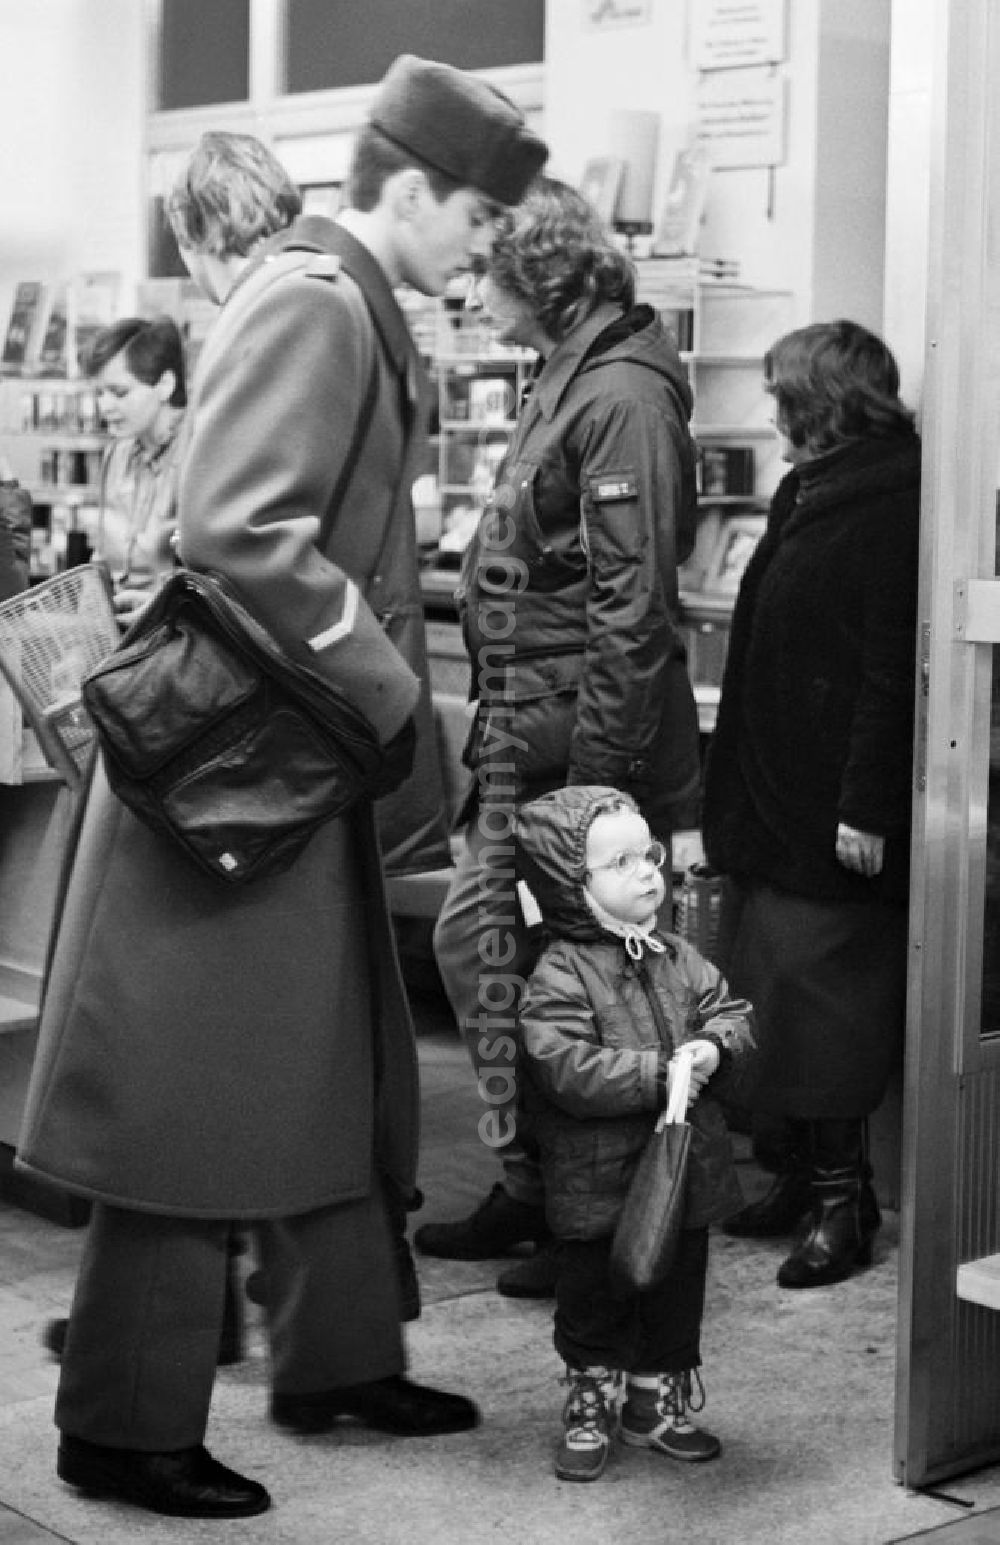 GDR picture archive: Berlin - Kunden stehen in einer Warteschlange in einer Buchhandlung in Berlin.